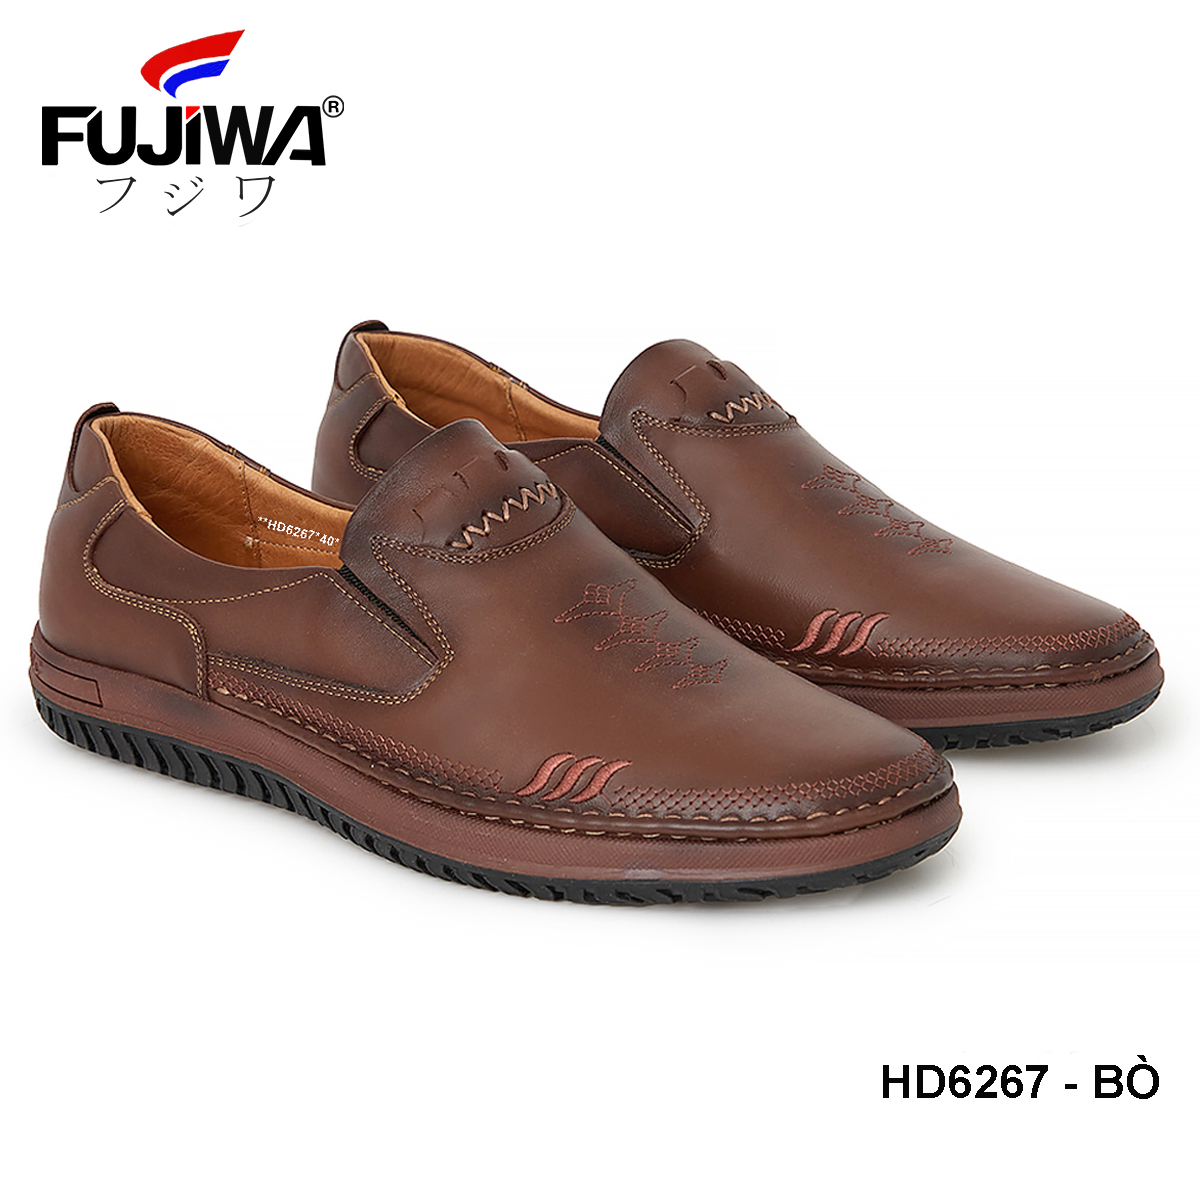 Giày Lười Mọi Nam Da Bò Fujiwa - HD6267. 100% Da bò thật Cao Cấp loại đặc biệt. Giày được đóng thủ công (handmade)